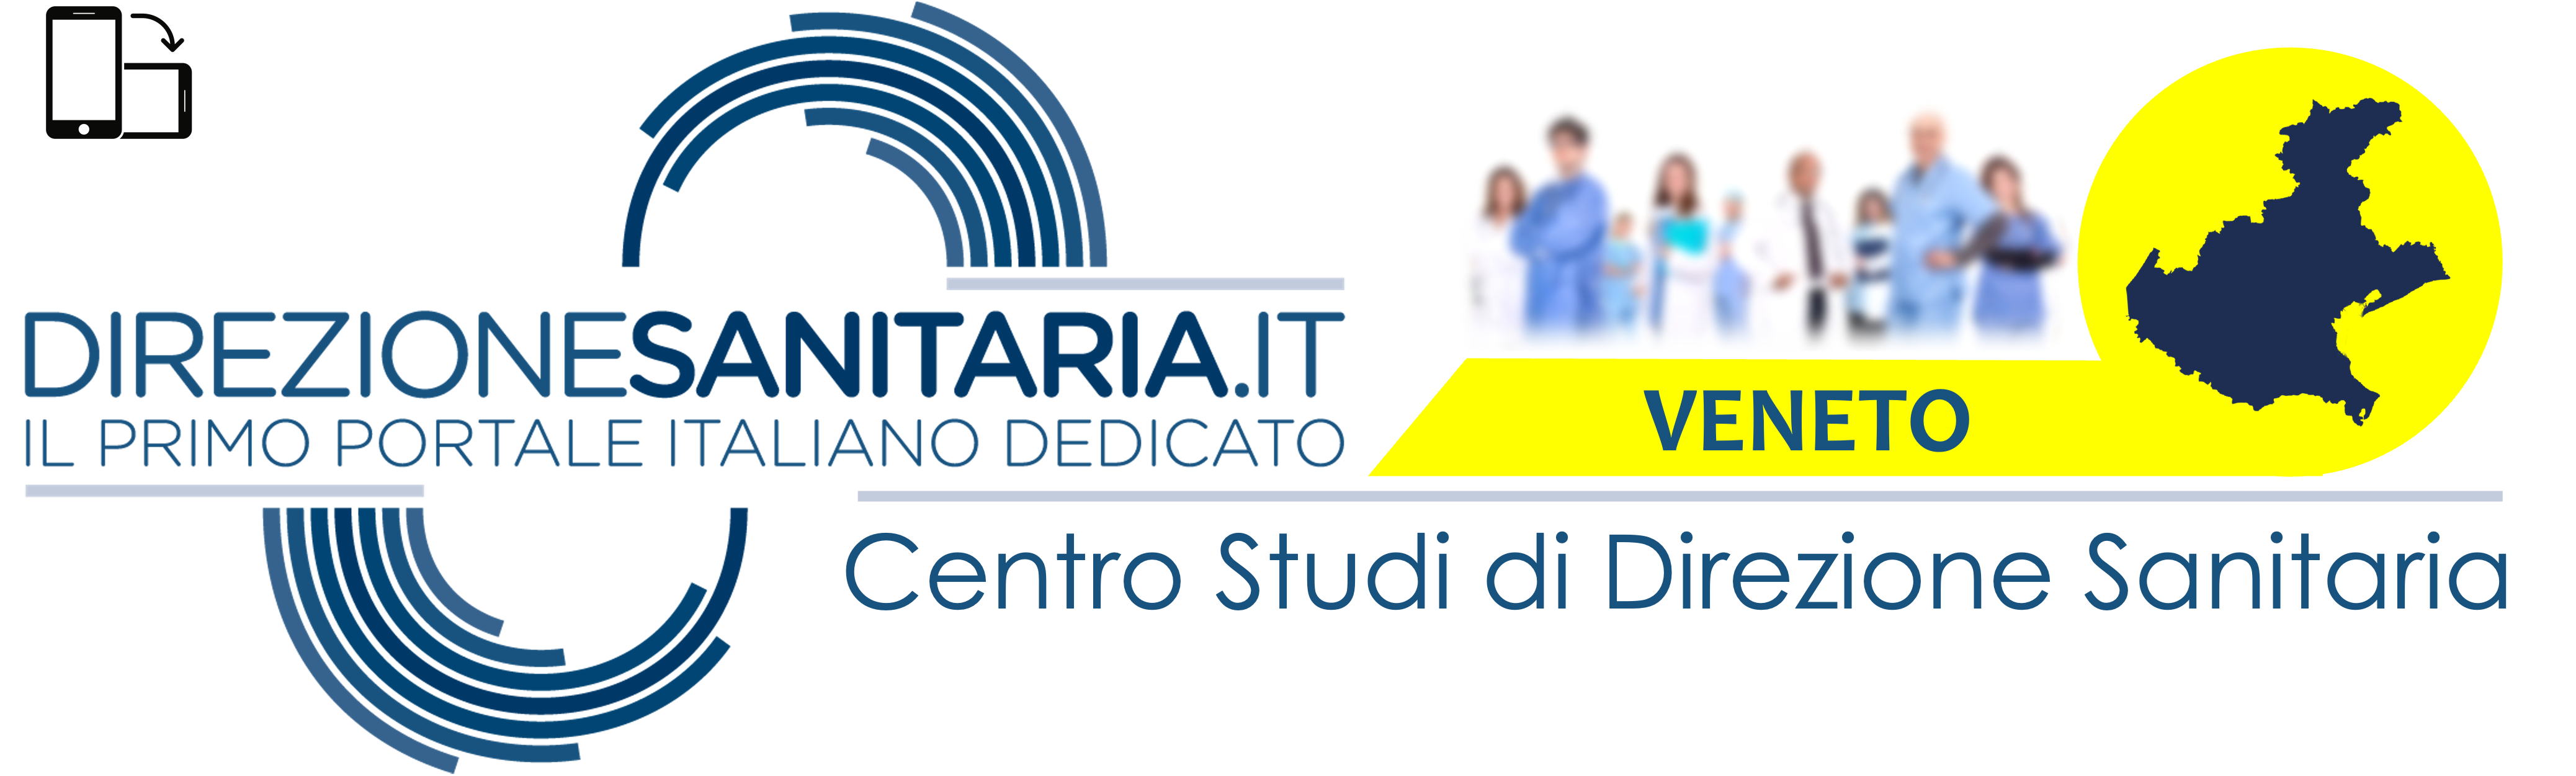 Direzione Sanitaria Veneto